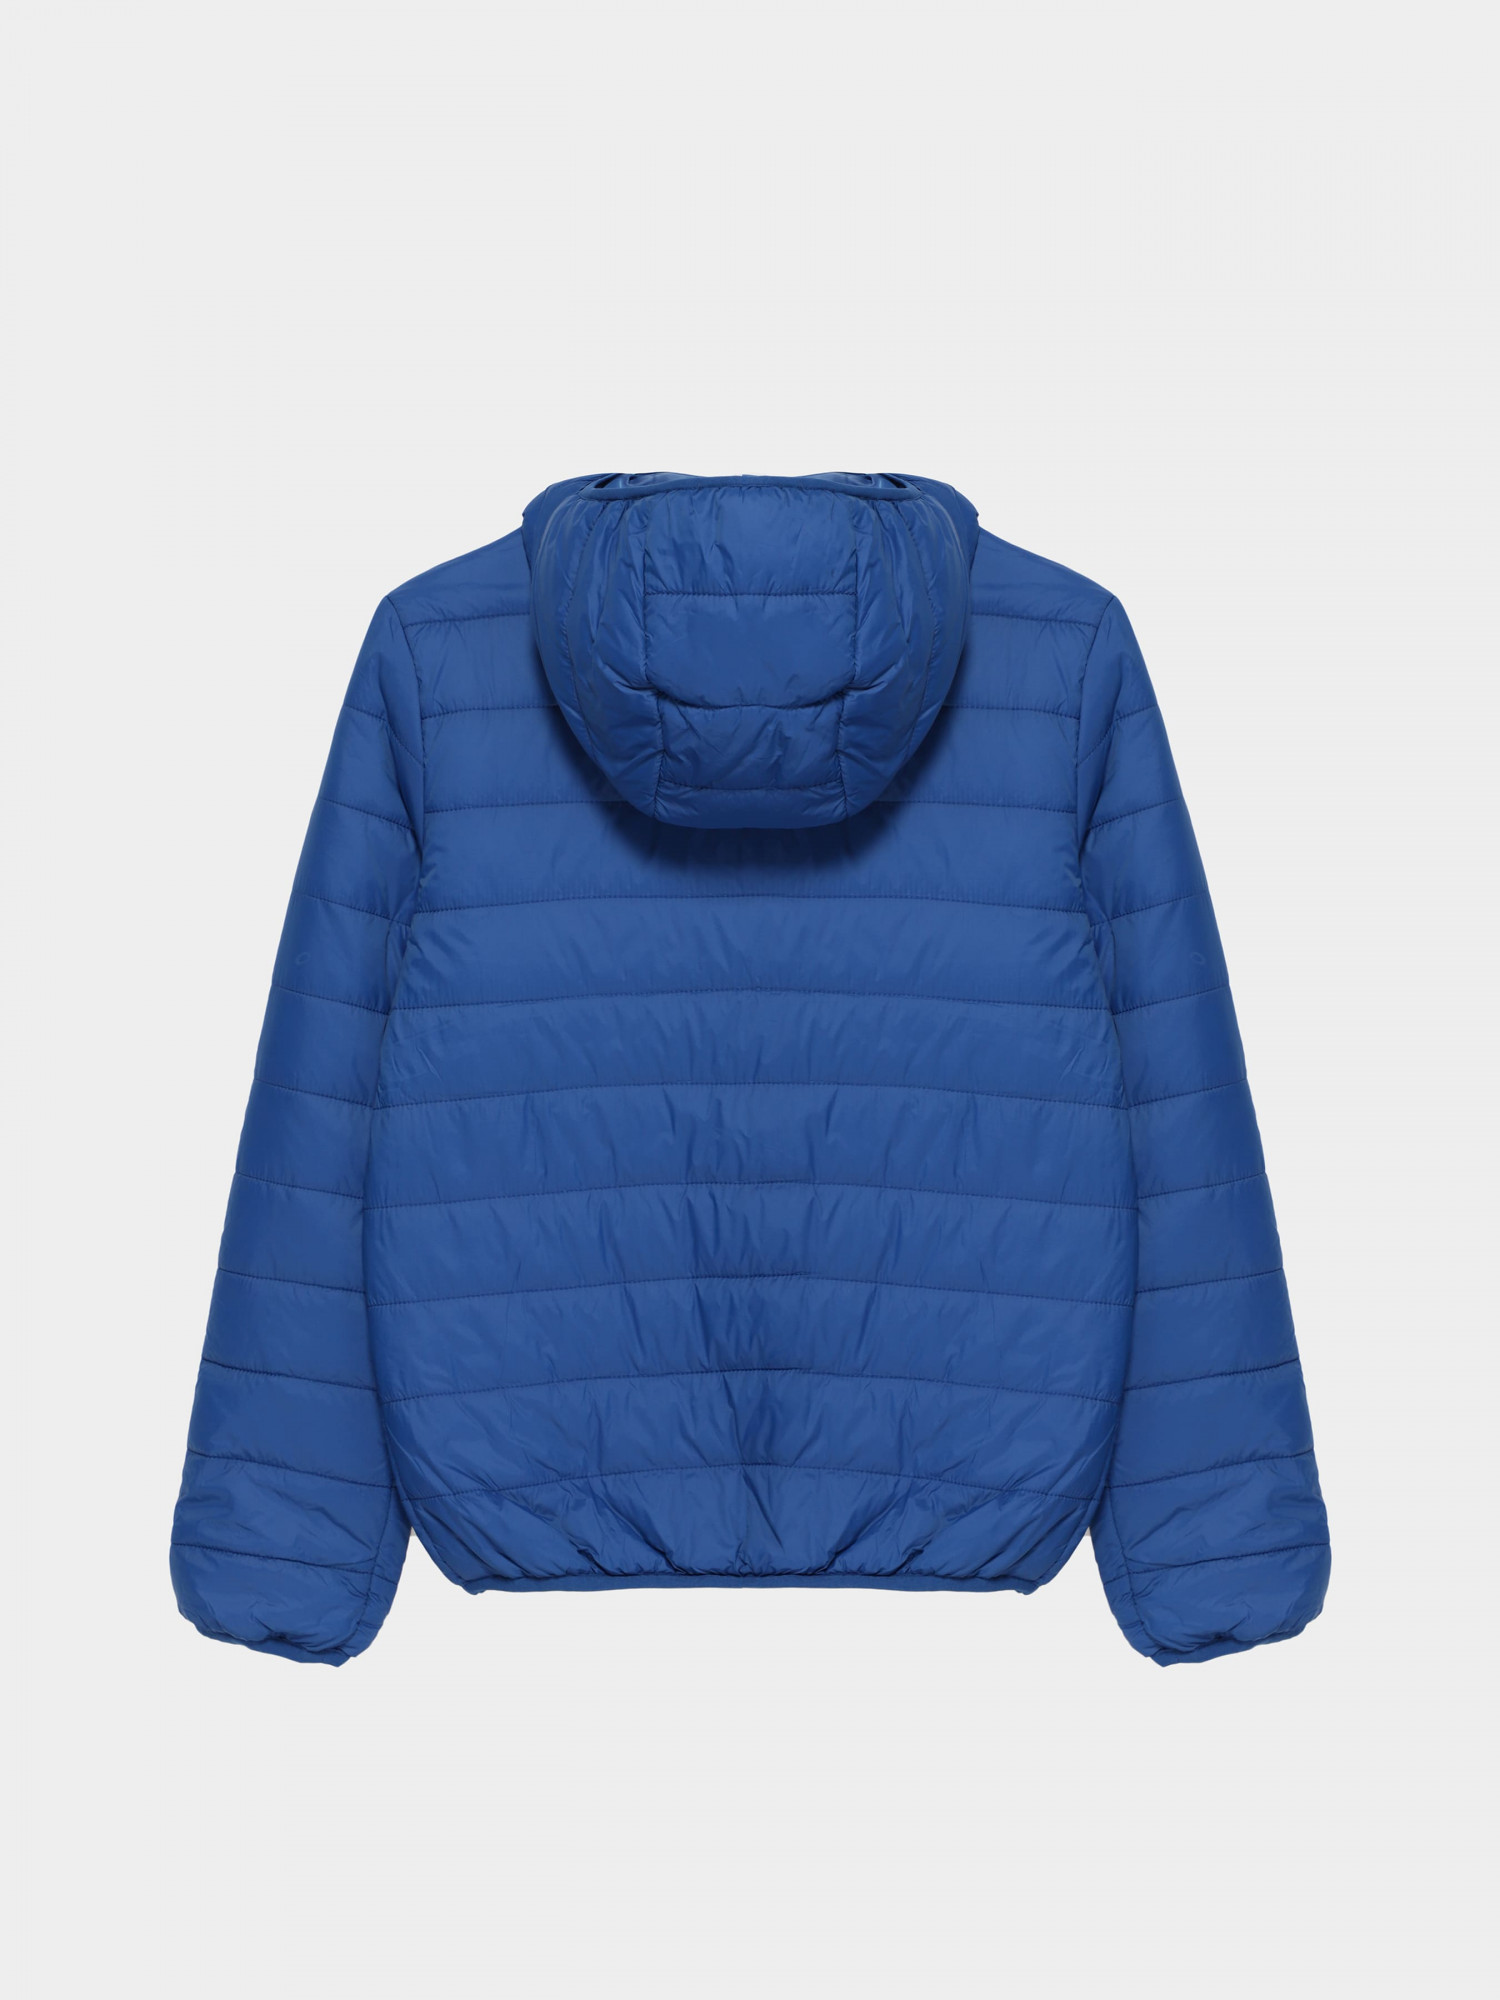 Куртка детская Radder Mackay темно-синяя 122228-450 изображение 5